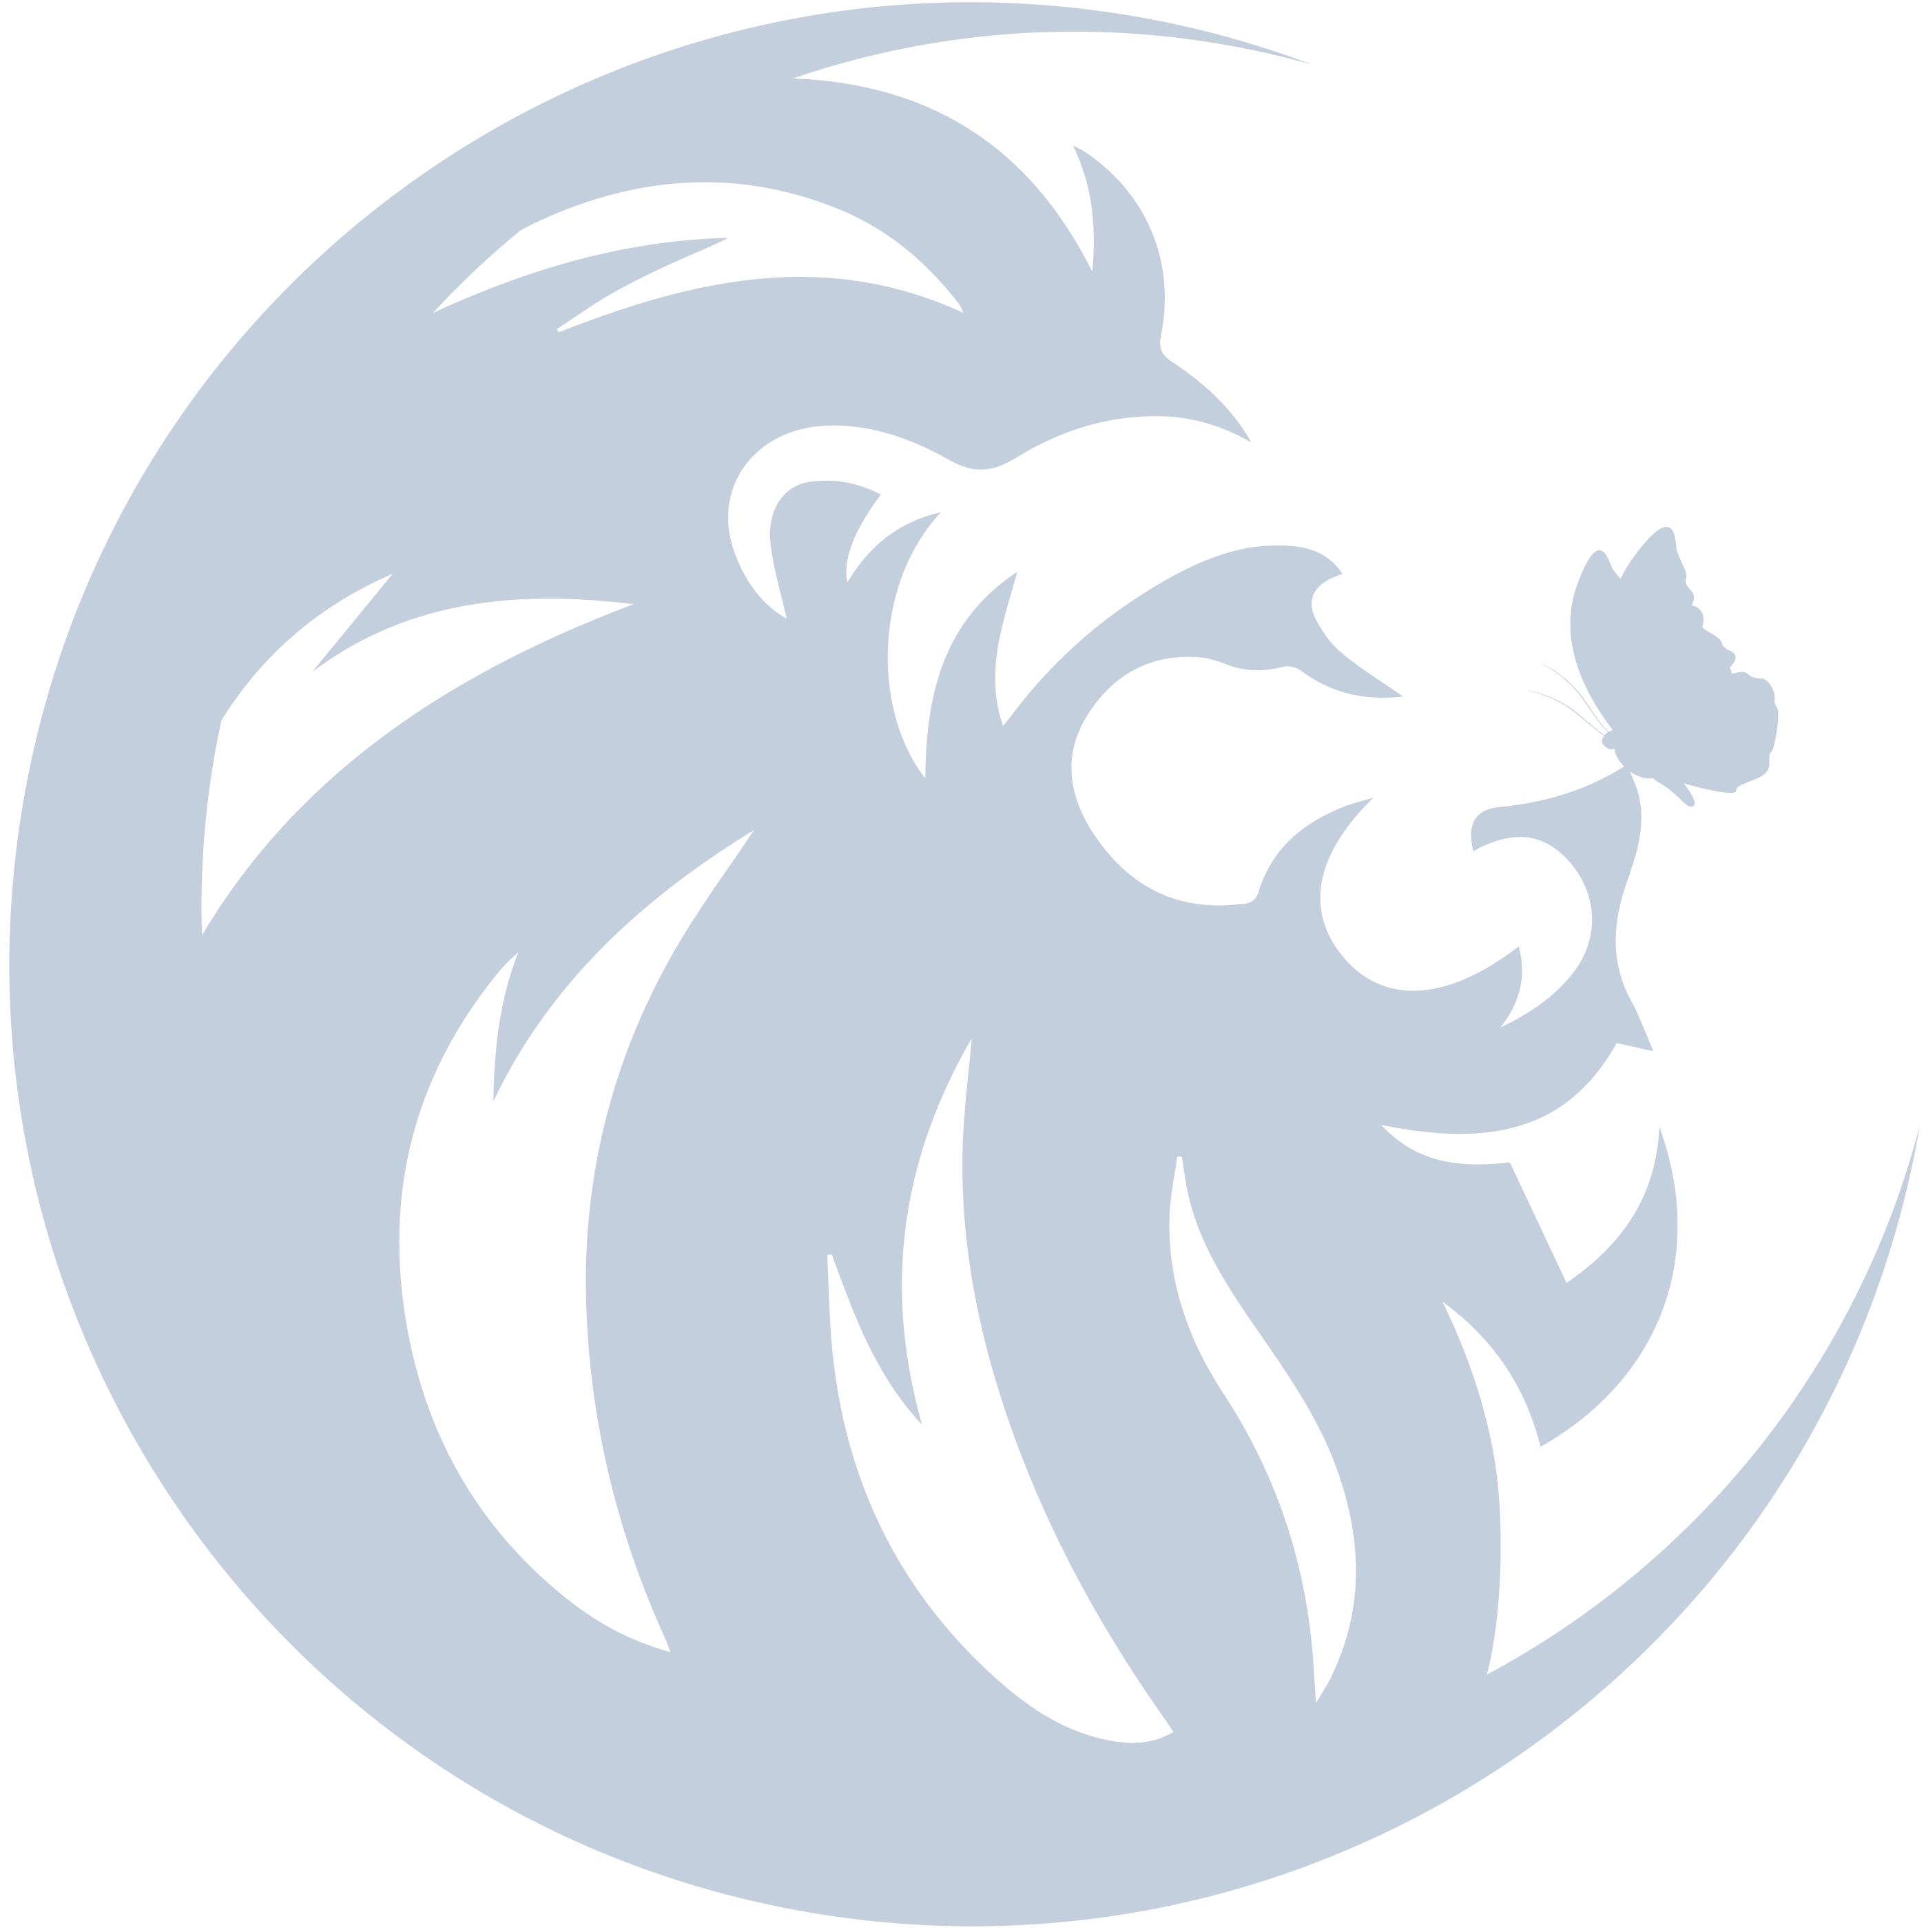 frontenddesign_logo